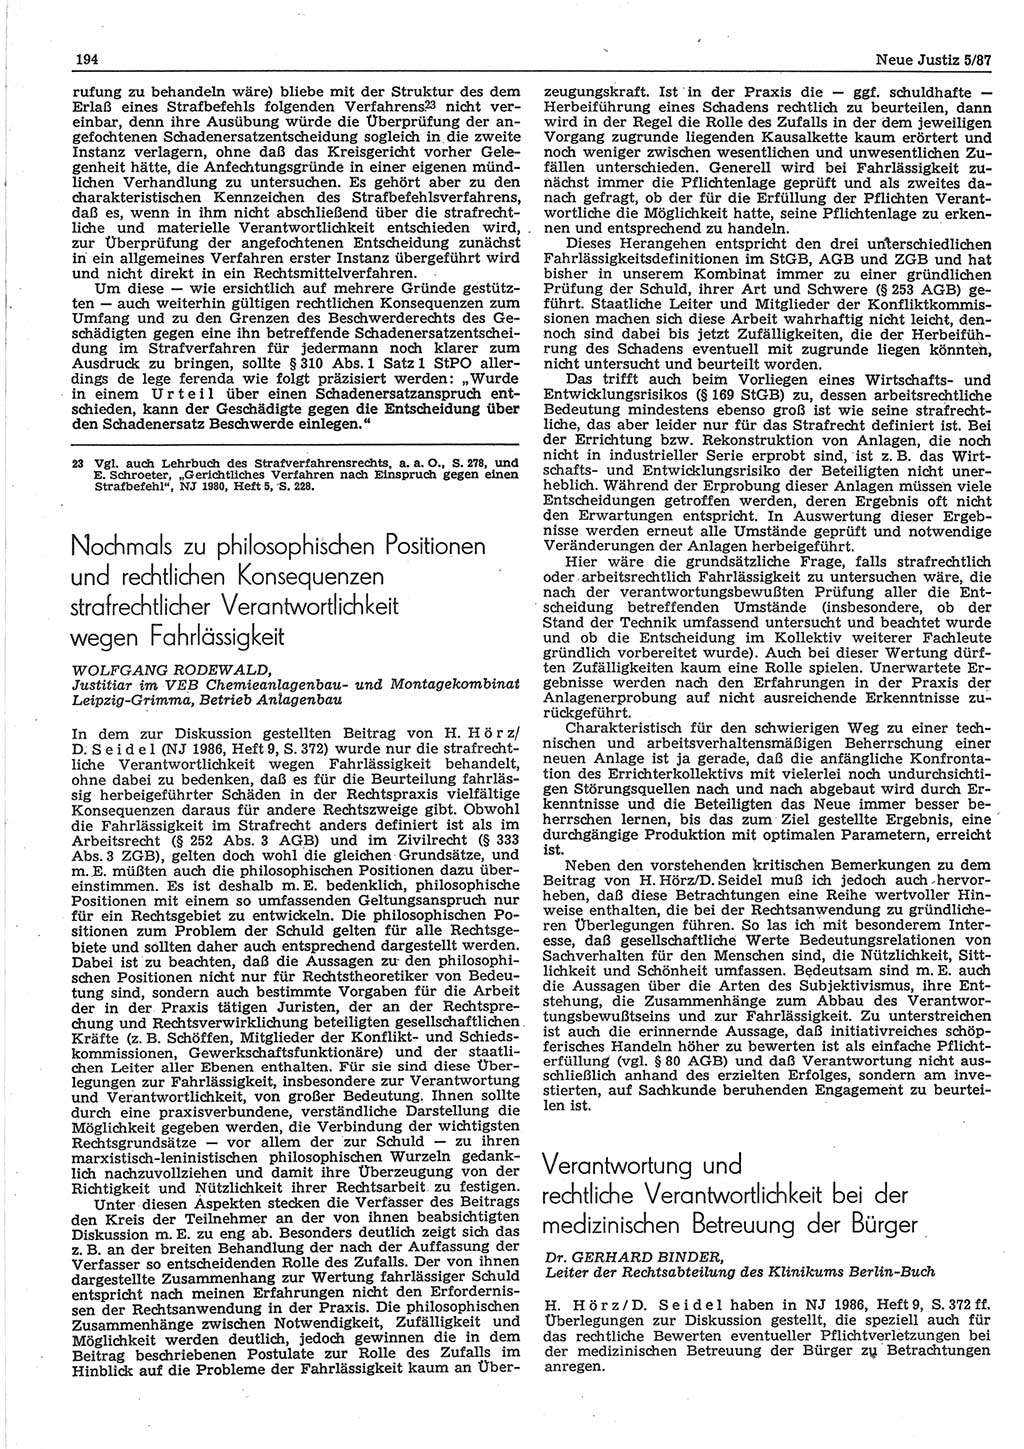 Neue Justiz (NJ), Zeitschrift für sozialistisches Recht und Gesetzlichkeit [Deutsche Demokratische Republik (DDR)], 41. Jahrgang 1987, Seite 194 (NJ DDR 1987, S. 194)